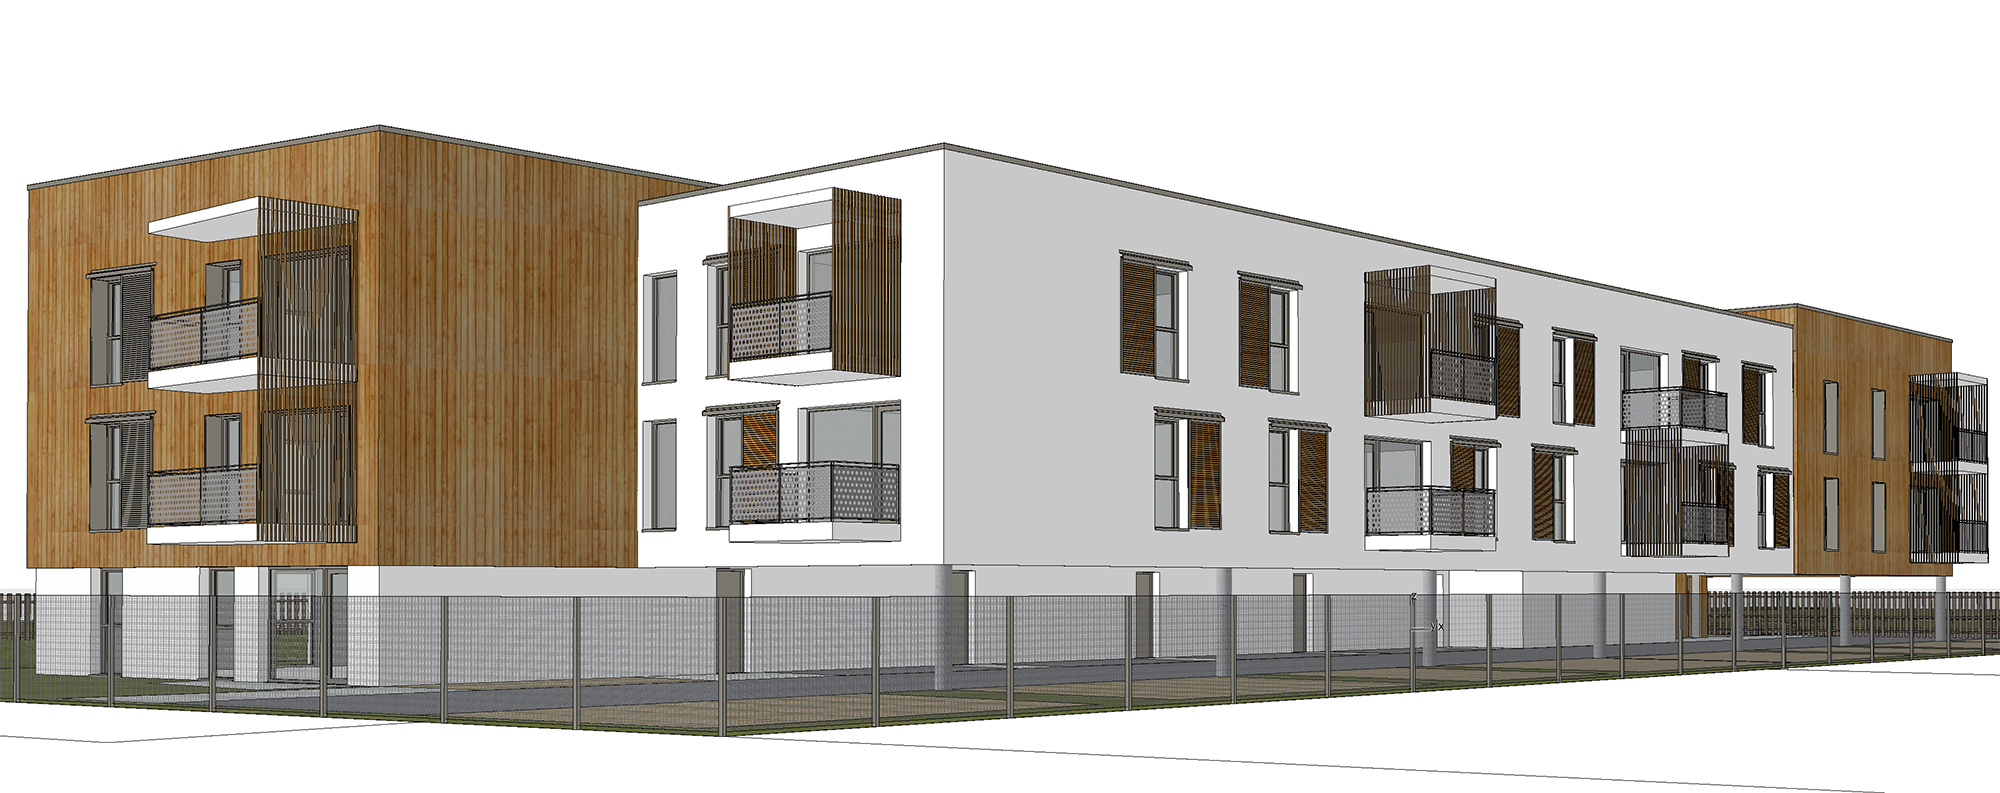 Créature Architectes - Construction d’un ensemble immobilier de 27 logements collectifs - ilot 13 - ZAC Champ prieur - Semoy - 45